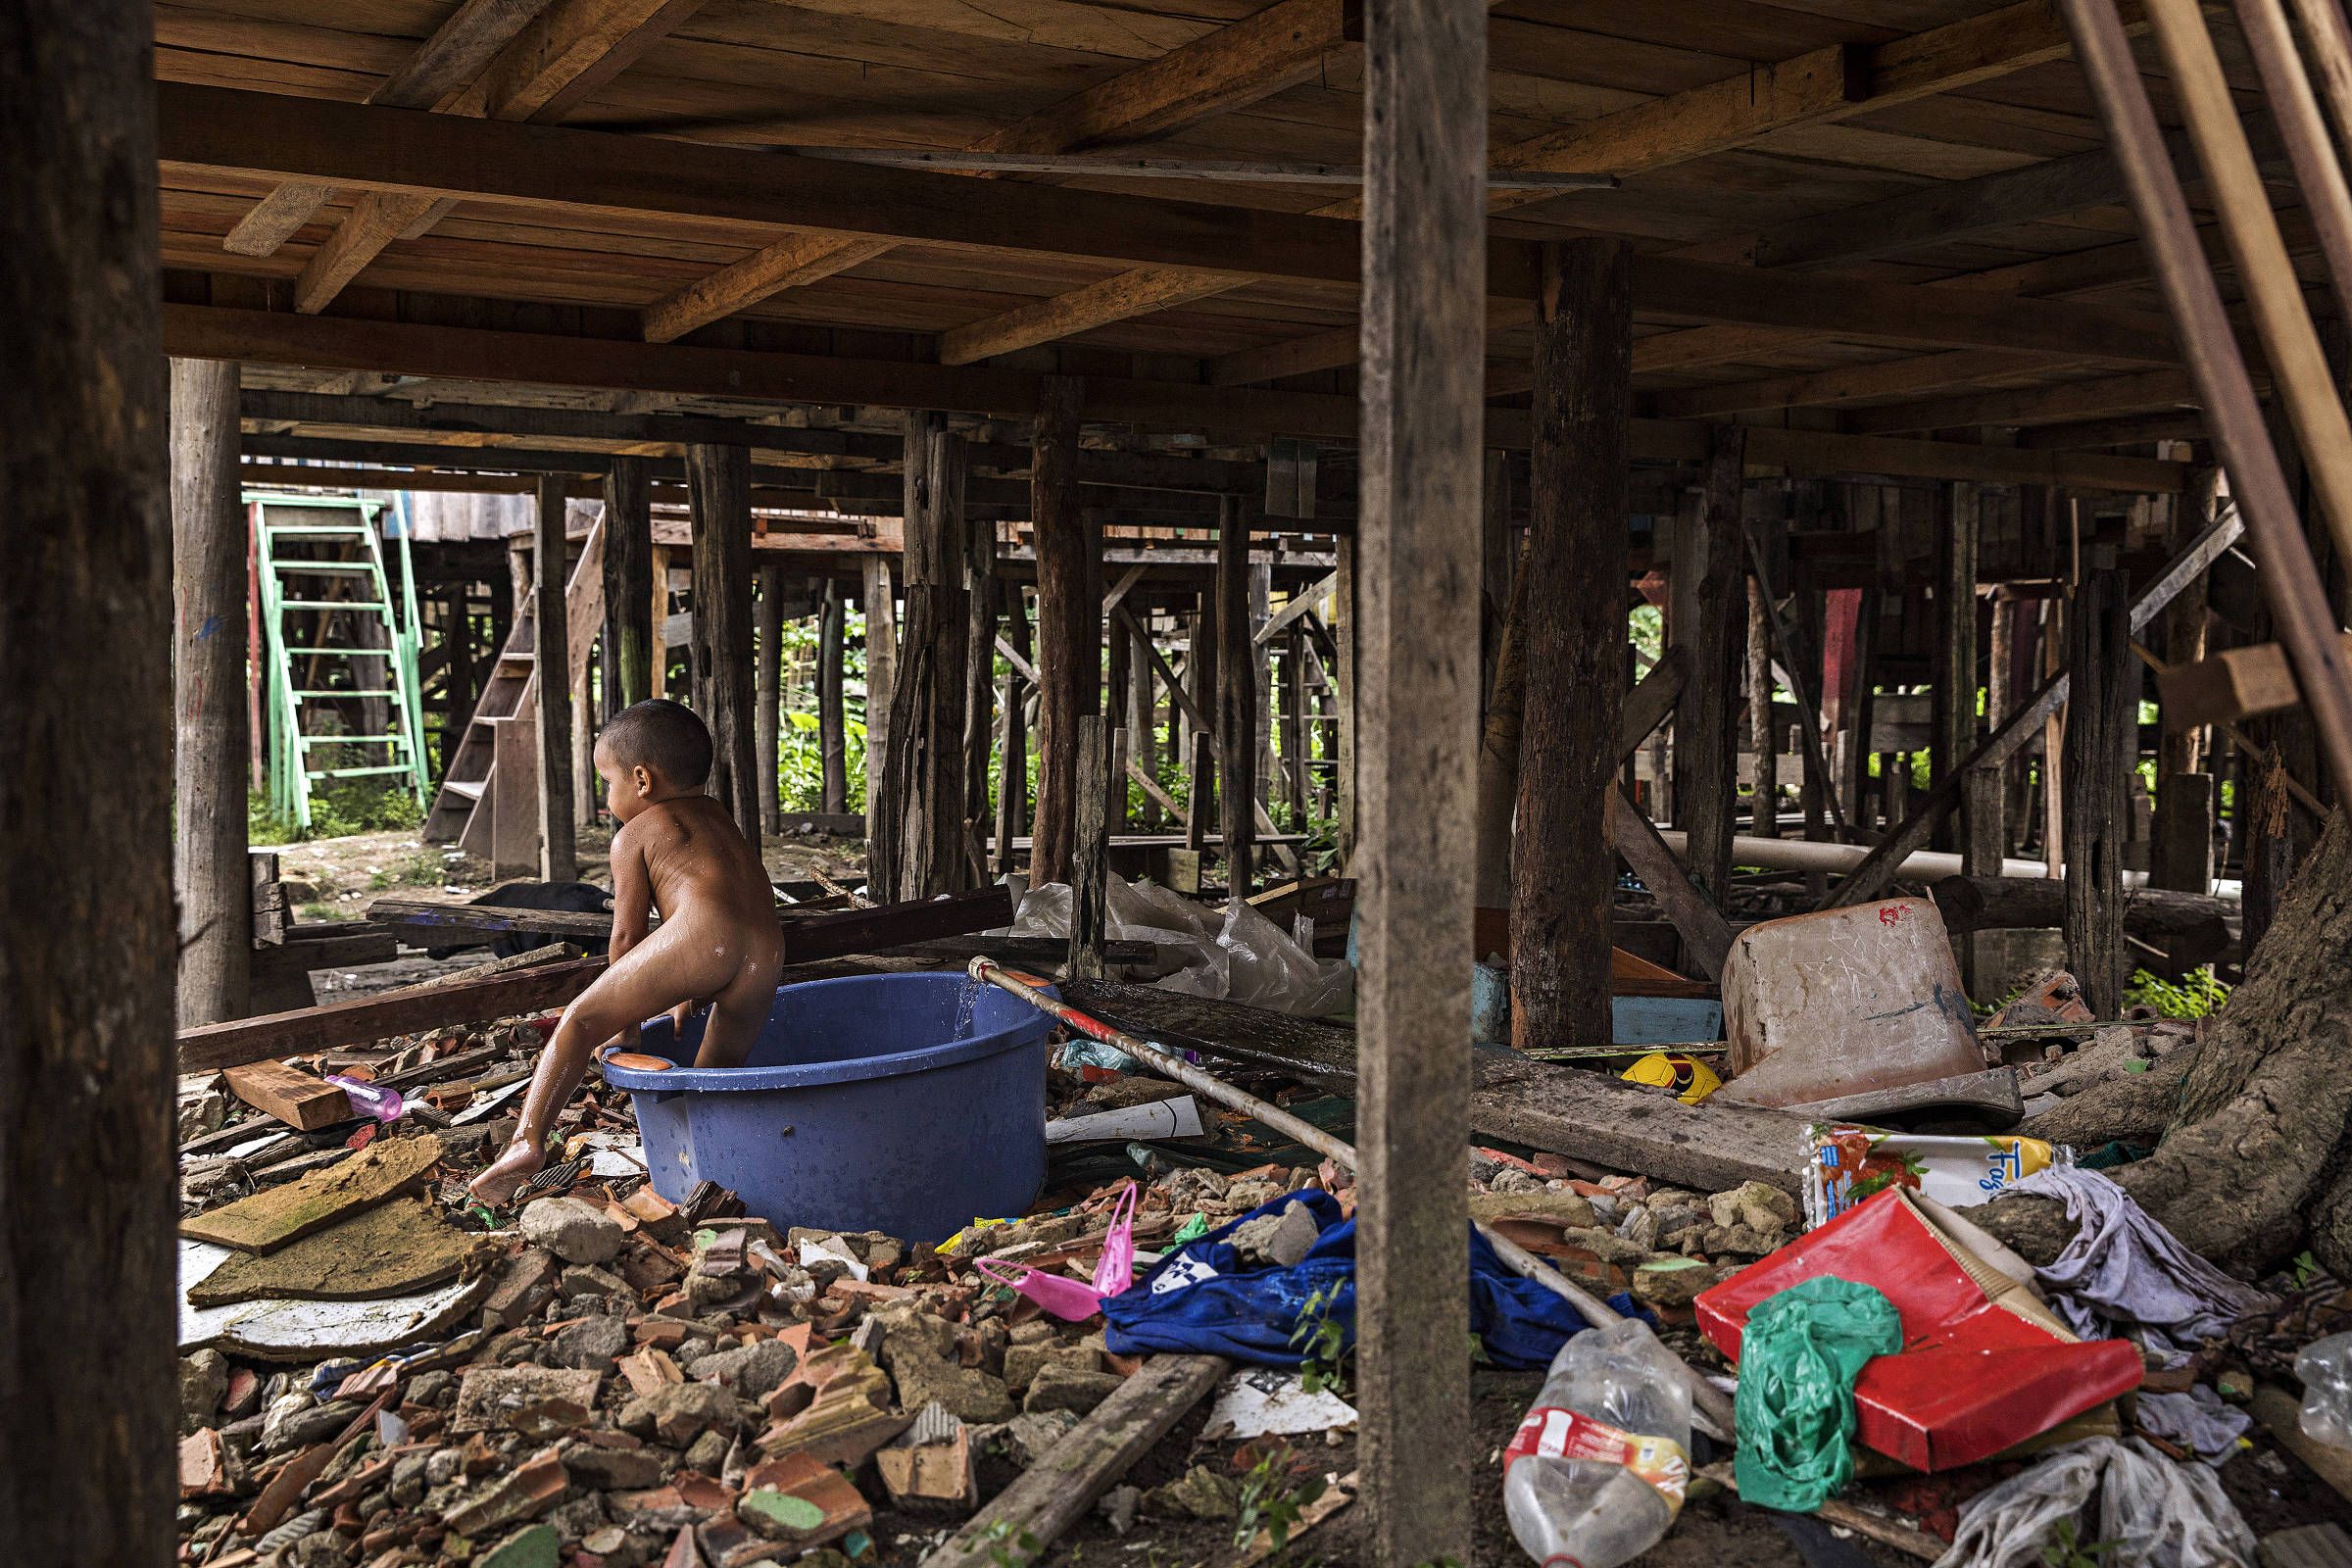 Garoto de três anos toma banho em bacia em meio a lixo acumulado em favela de palafita atingida por enchentes em Manaus